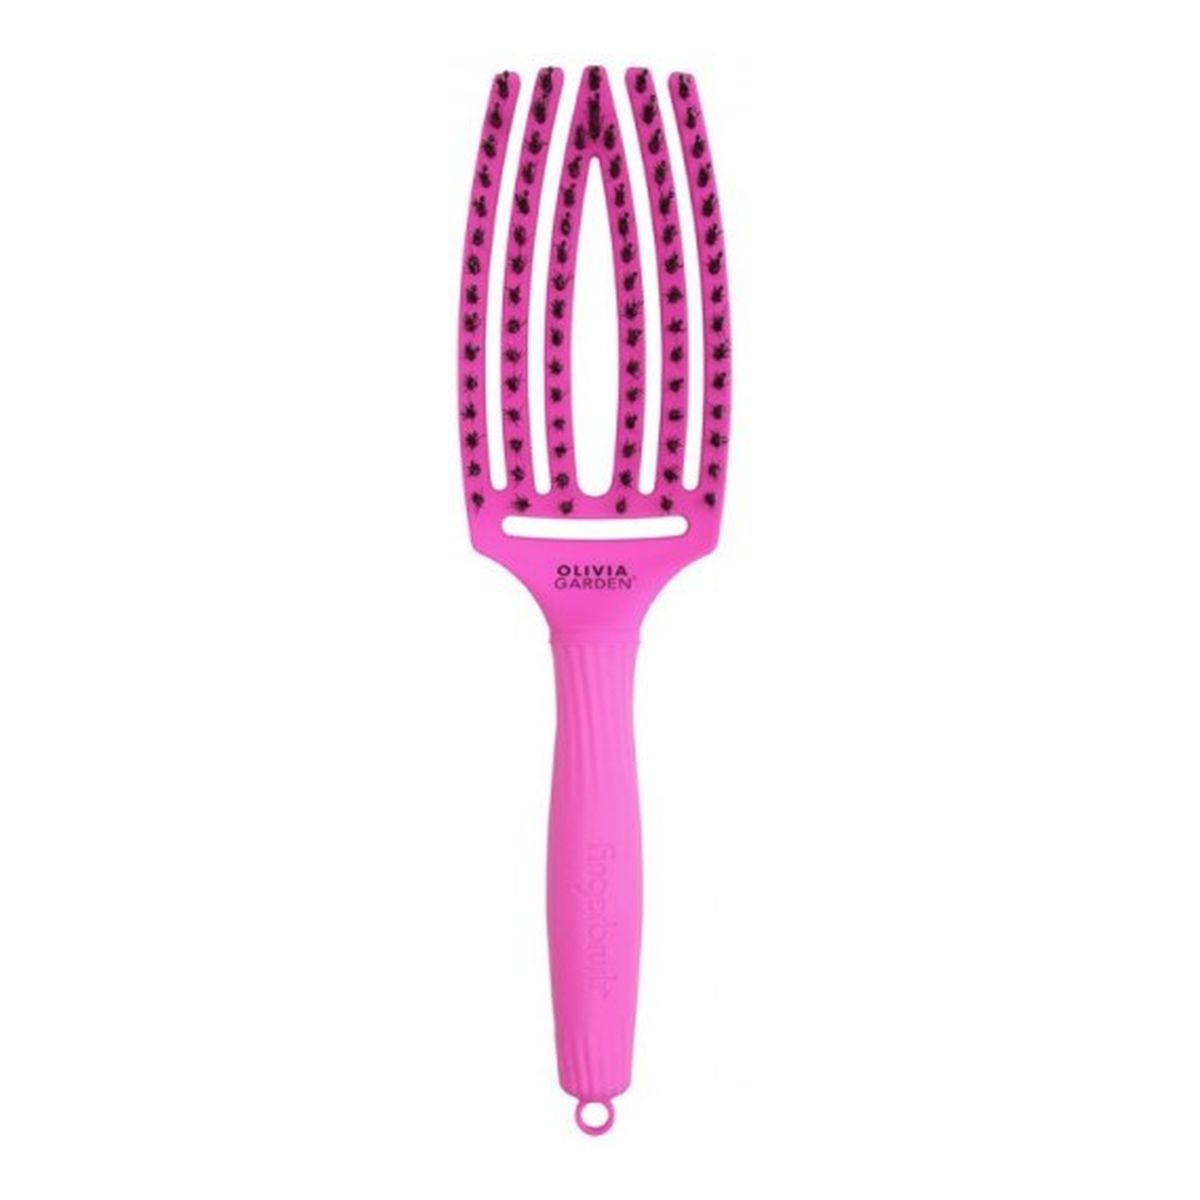 Olivia Garden Fingerbrush Szczotka do włosów Neon Purple